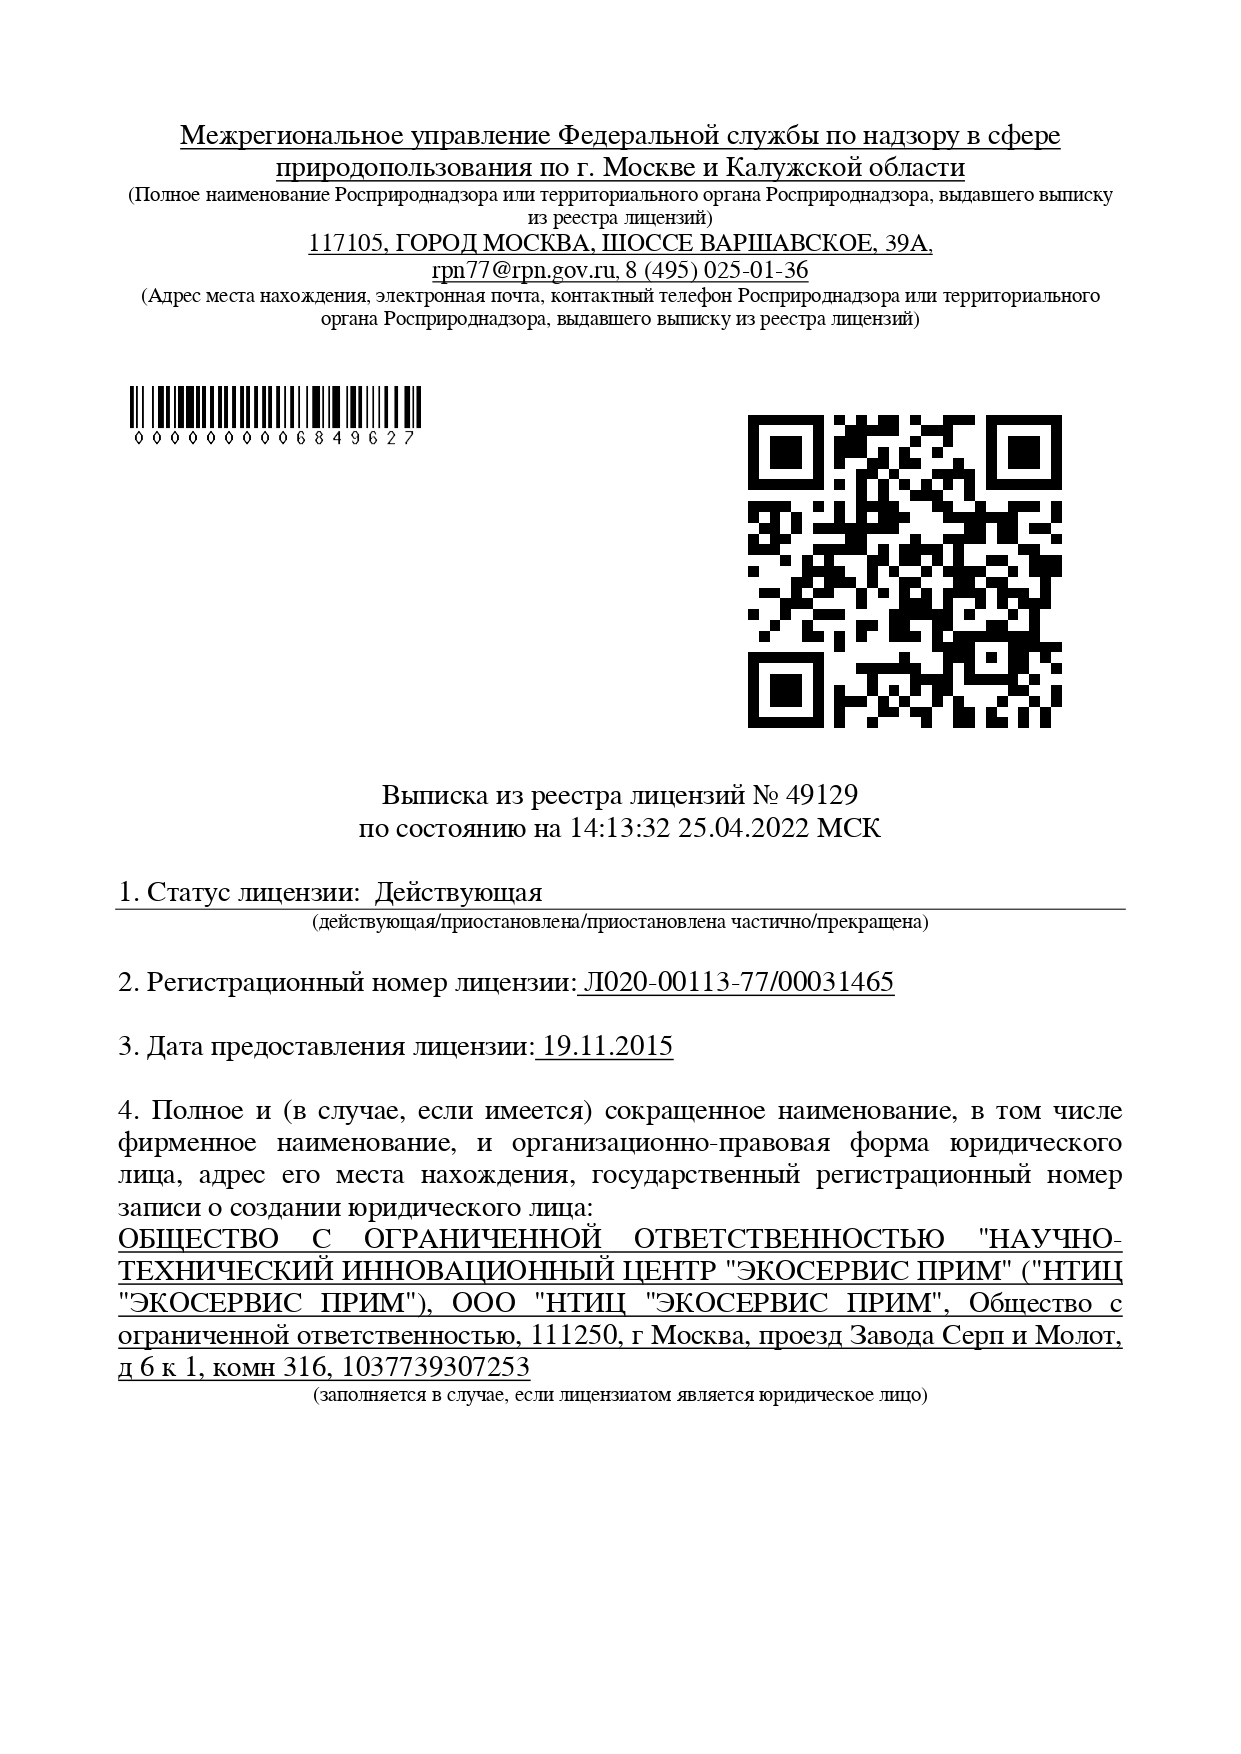 Выписка из реестра лицензий «ЭКОСЕРВИС ПРИМ» с ЭЦП 2022